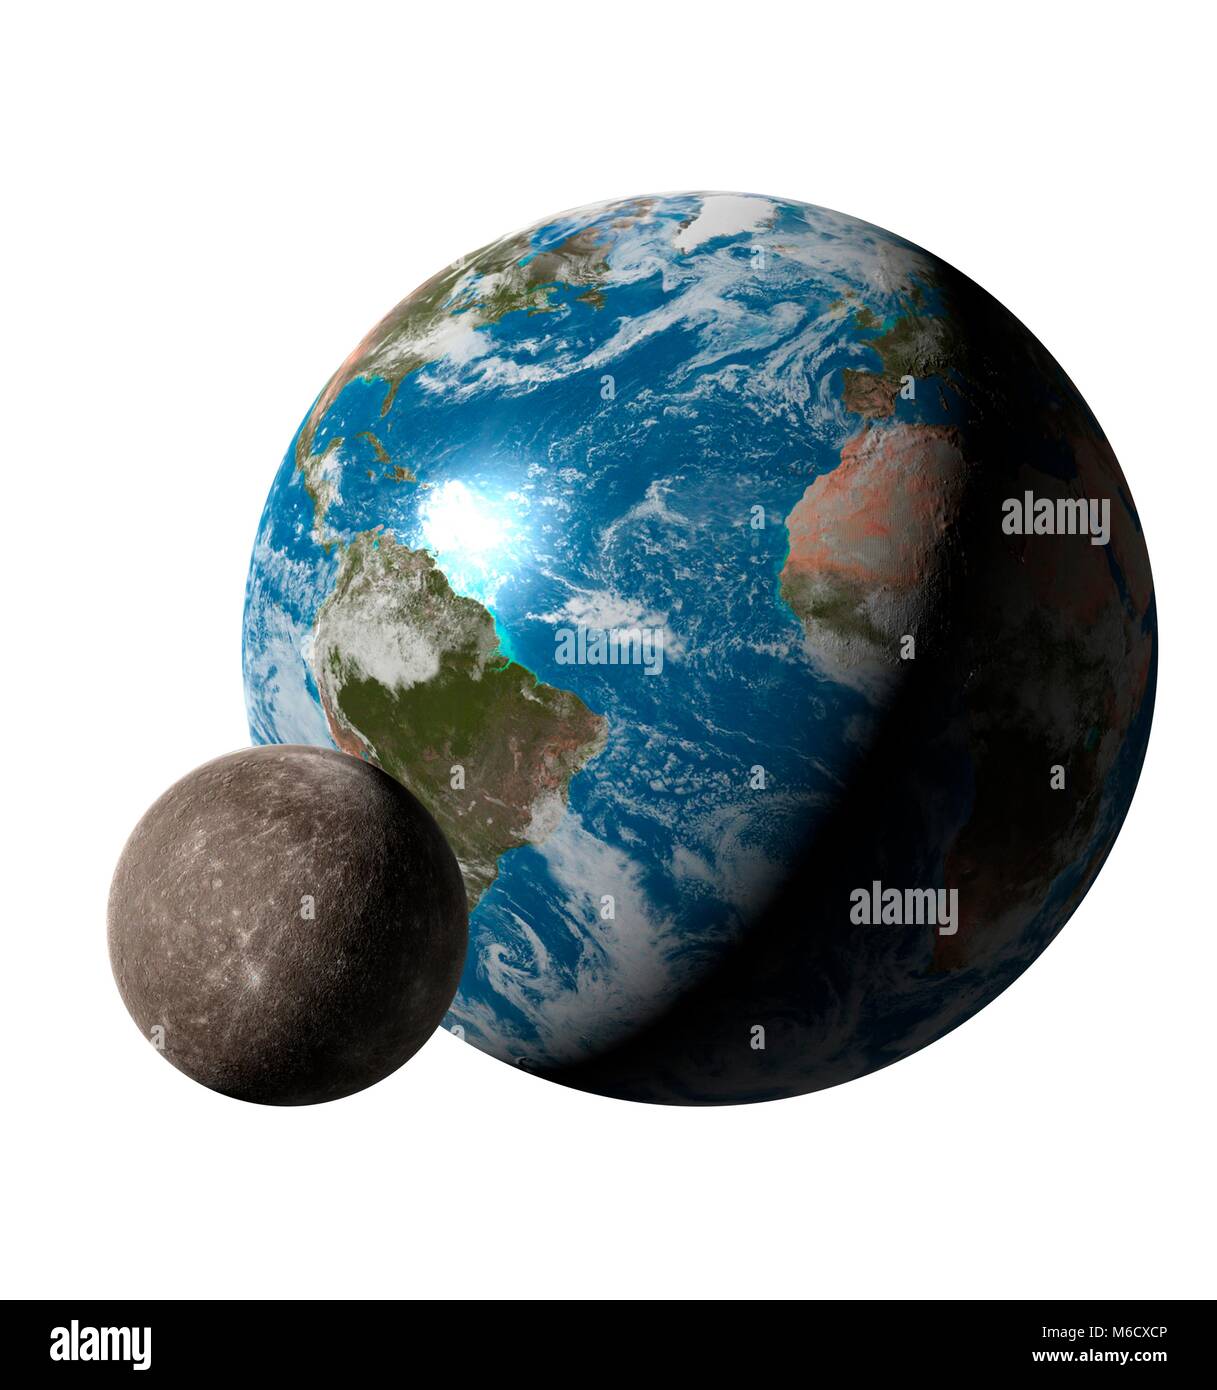 Bild vergleichen von der Größe der Erde (rechts) mit der Planet Merkur. Es ist die sonnennächsten Planeten, mit einer durchschnittlichen Entfernung von 0,39 fache der Entfernung Erde-Sonne. Mit einem Durchmesser von 38 %, die der Erde, Merkur ist der kleinste Planet des Sonnensystems. Stockfoto